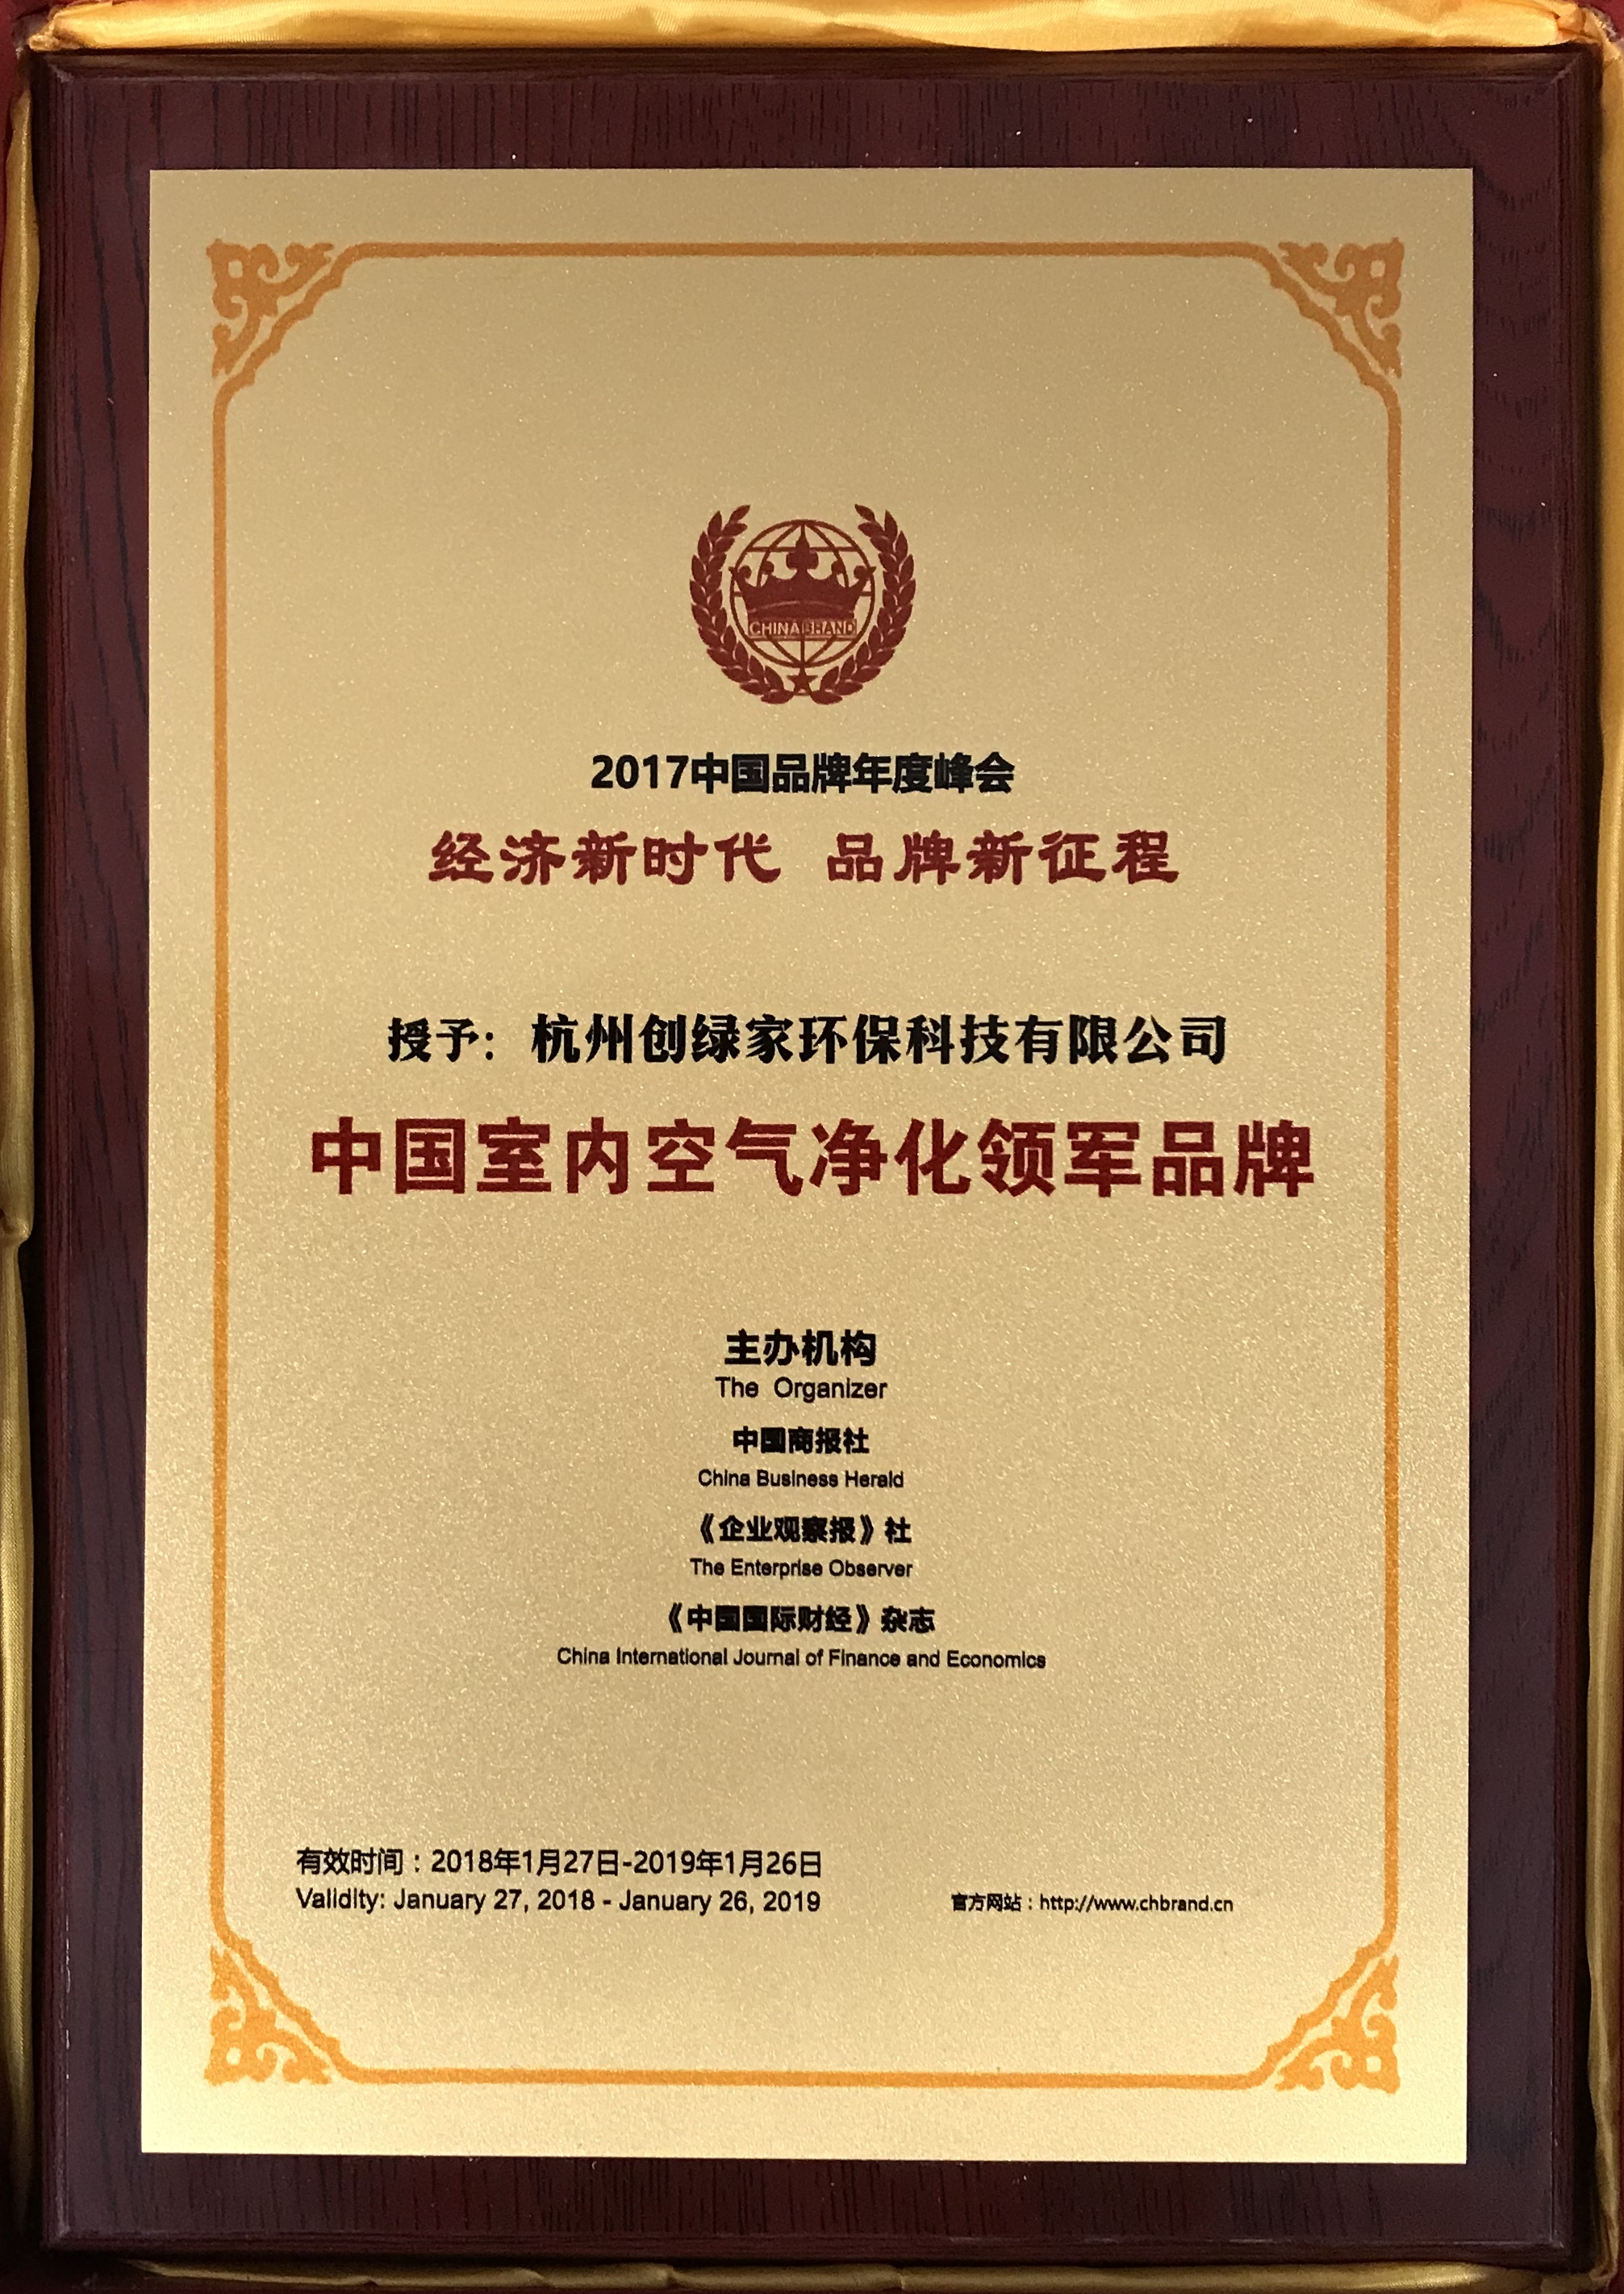 祝賀創綠家環保榮獲“中國室內空氣凈化領軍品牌”榮譽